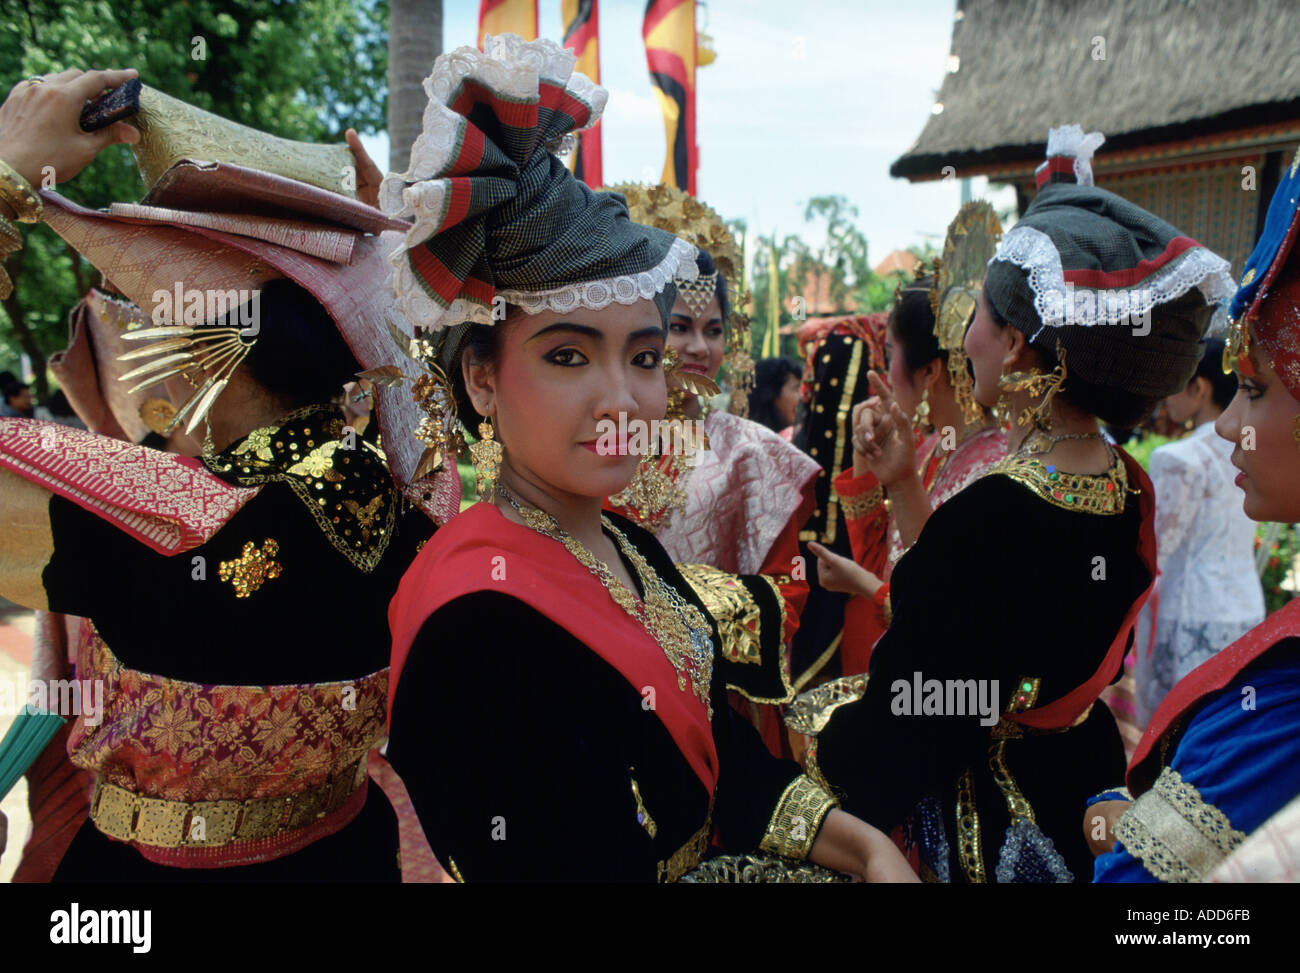 Tänzer in Tracht in Indonesien Stockfoto